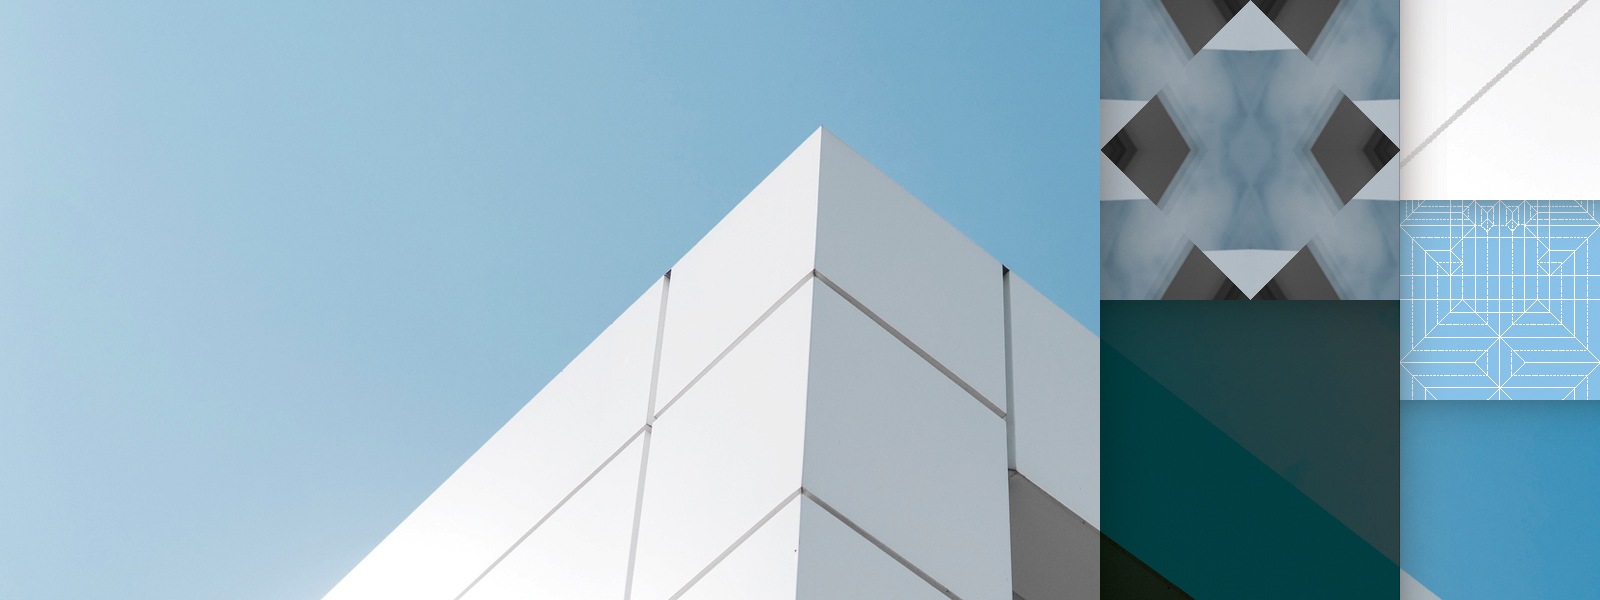 Edificio de oficinas blanco contra el cielo azul con rectángulos superpuestos